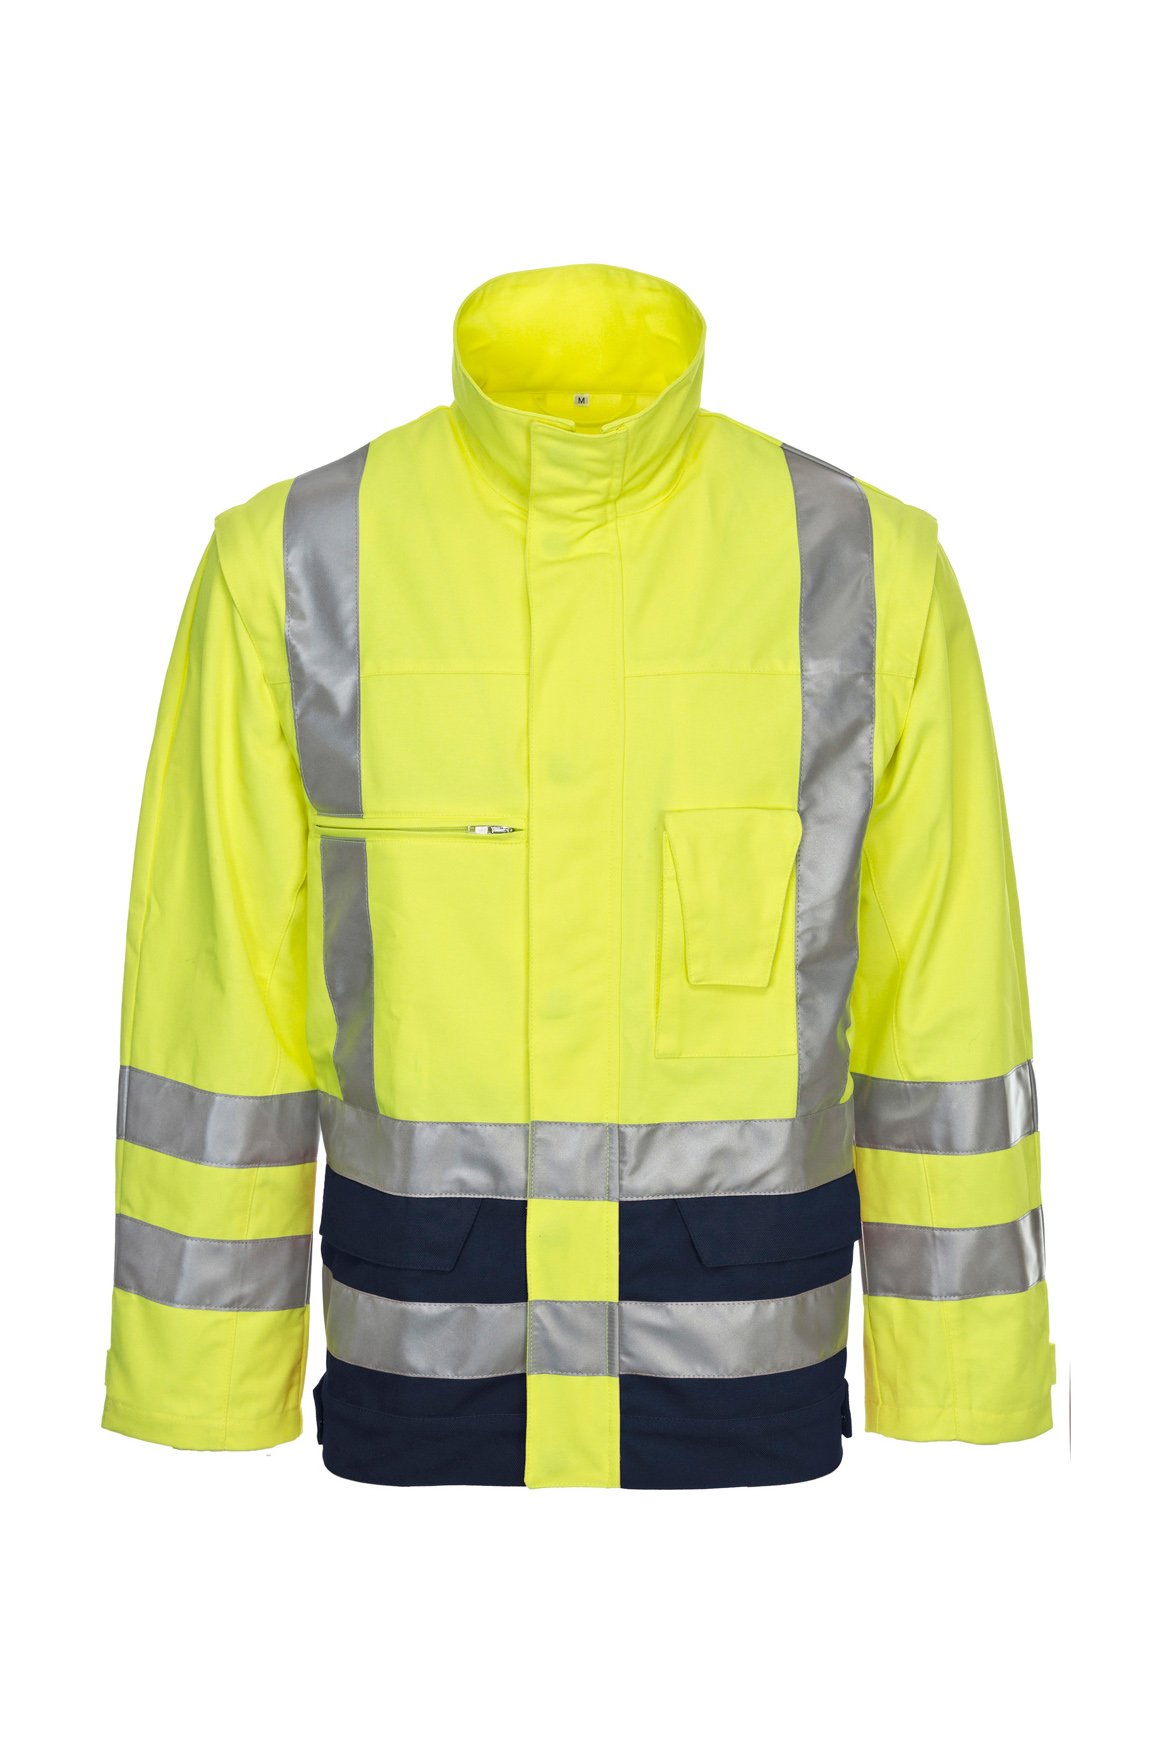 Warnschutz-Arbeitsjacke, fluorescent lemon/navy, ISO 20471 Kl. 2